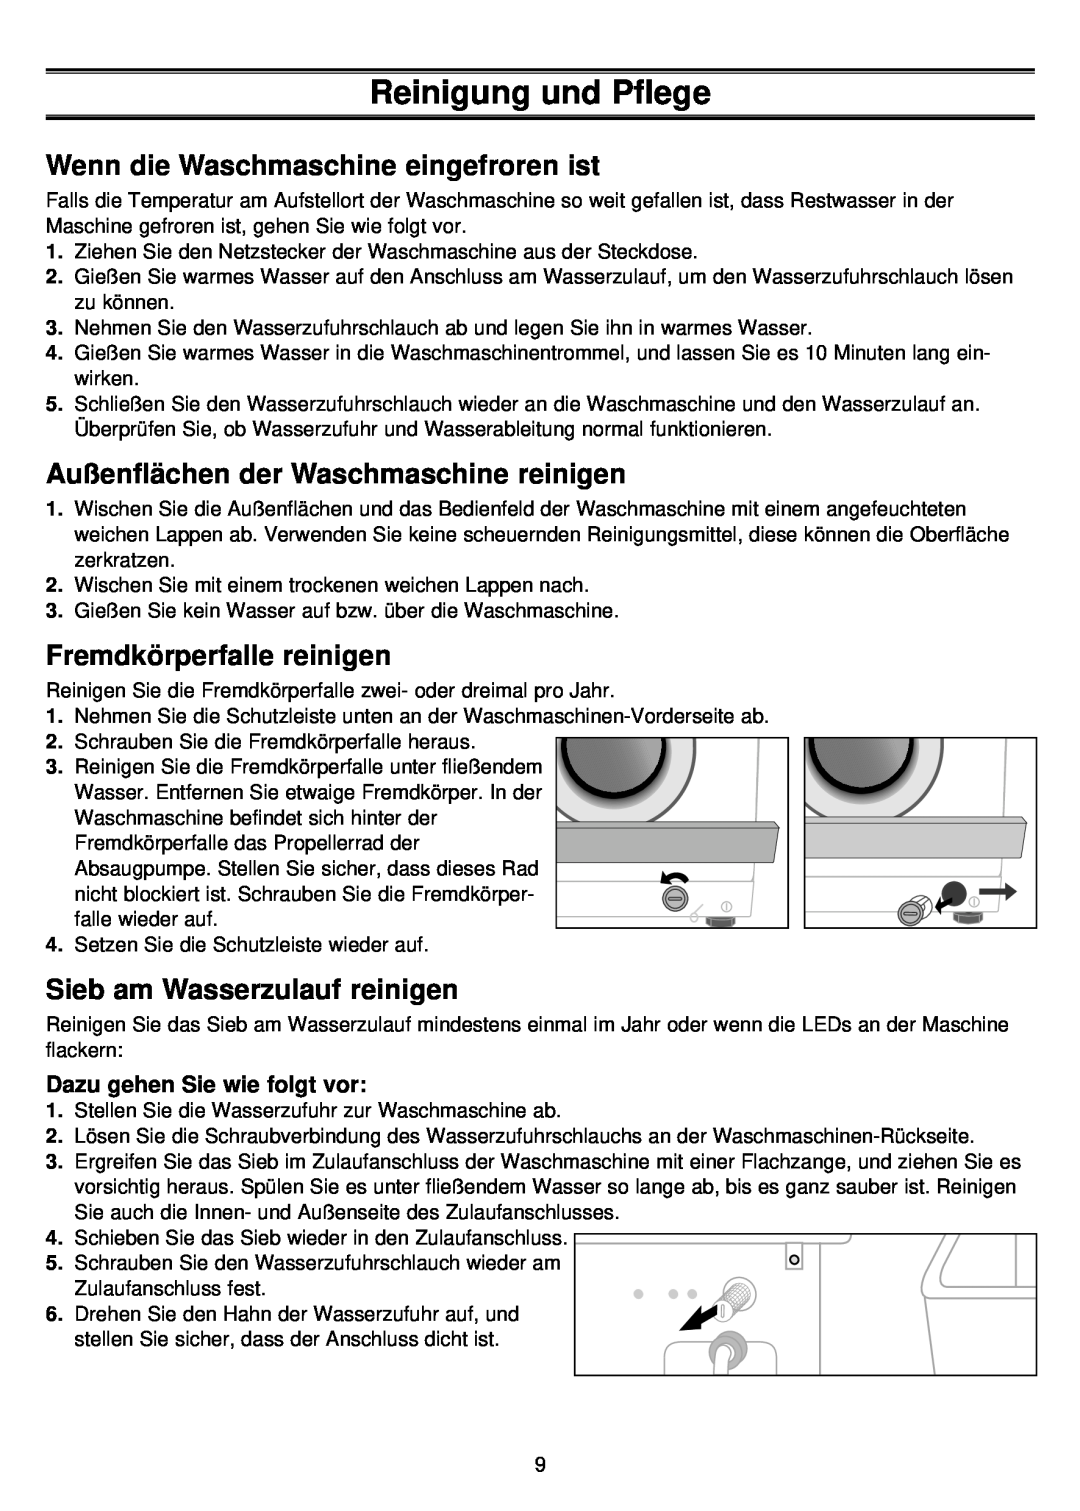 Samsung S1043, F843 Reinigung und Pflege, Wenn die Waschmaschine eingefroren ist, Außenflächen der Waschmaschine reinigen 